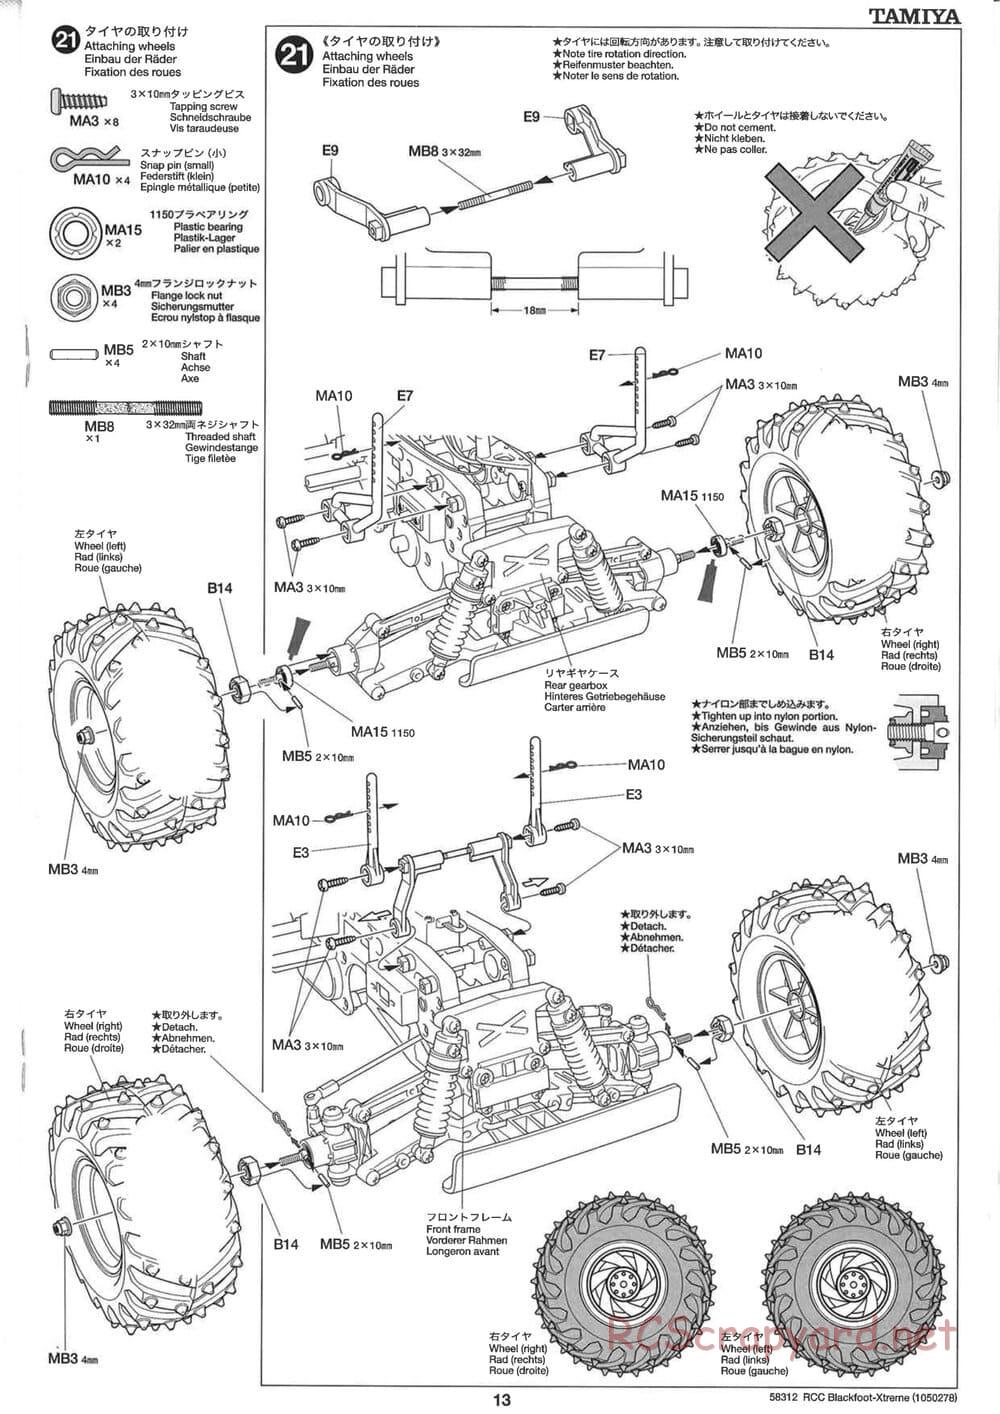 Tamiya - Blackfoot Xtreme - WT-01 Chassis - Manual - Page 13